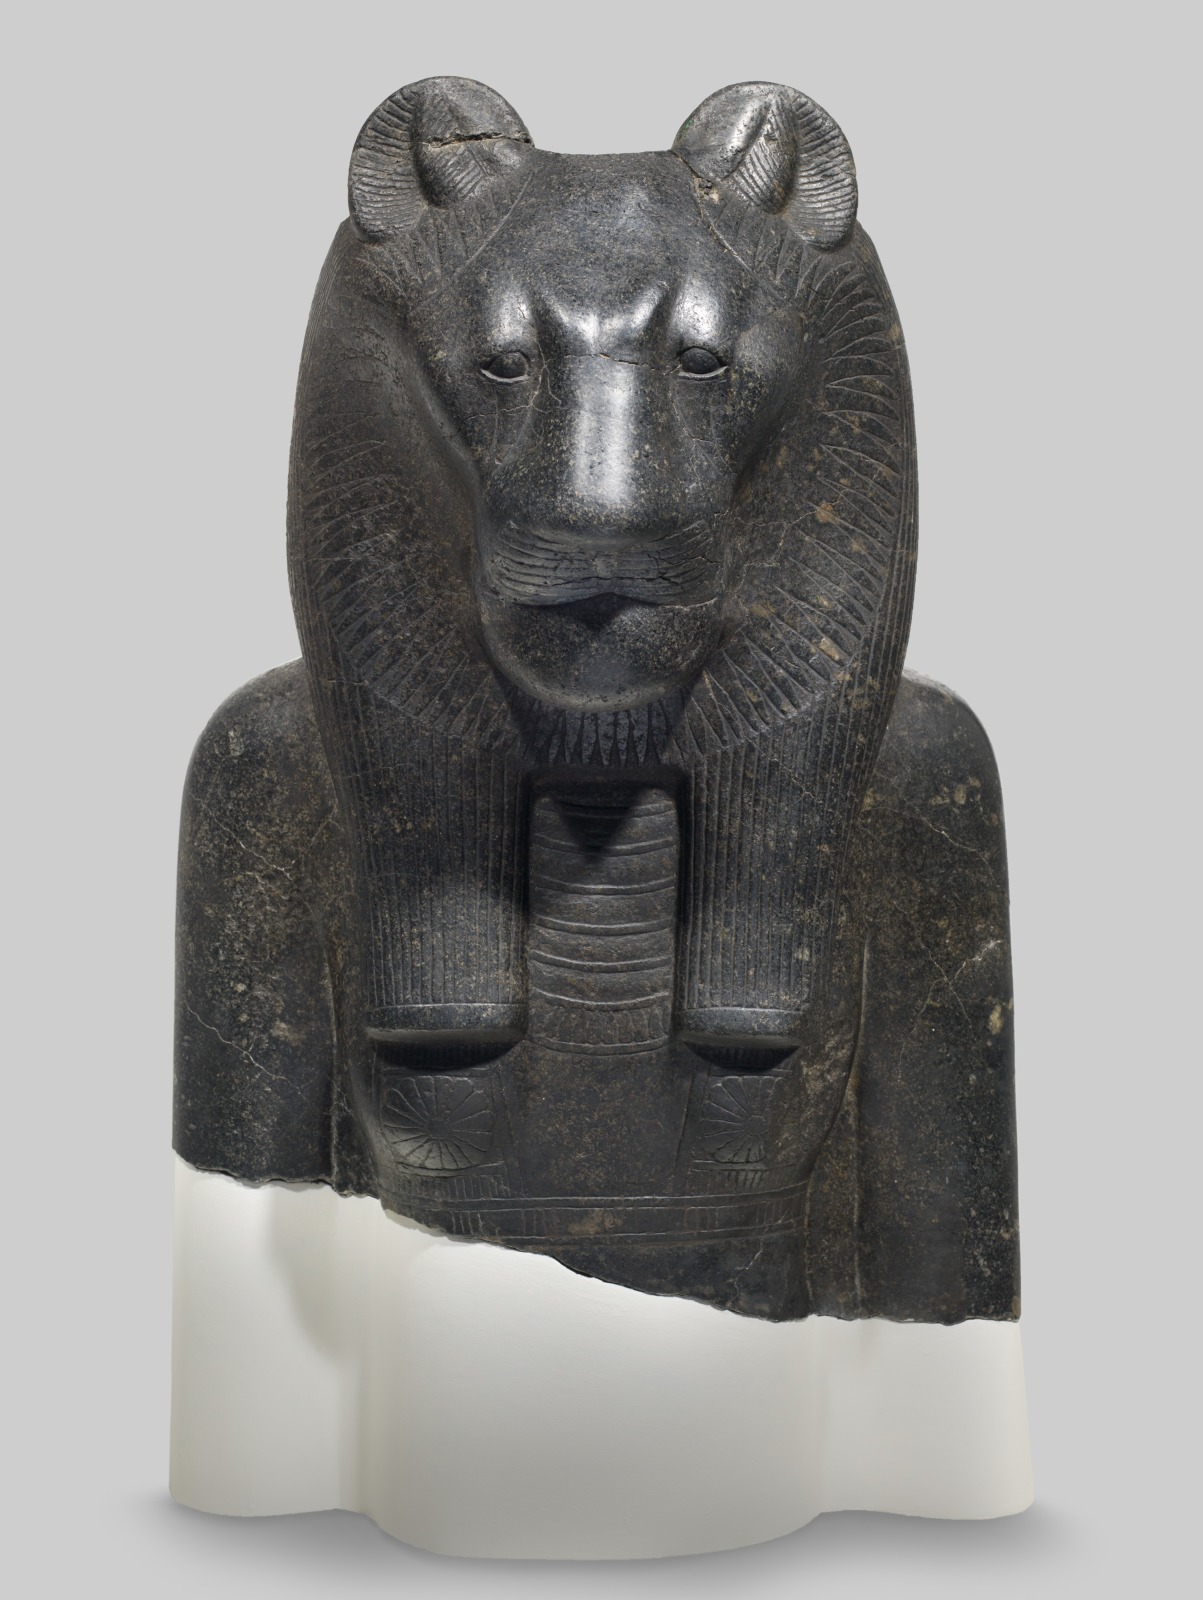 Bust Fragment from a Colossal Statue of Sekhmet, 1390 BCE-1352 BCE, Thebes/Egypt, Cincinnati Art Museum, Cincinnati, OH, USA.